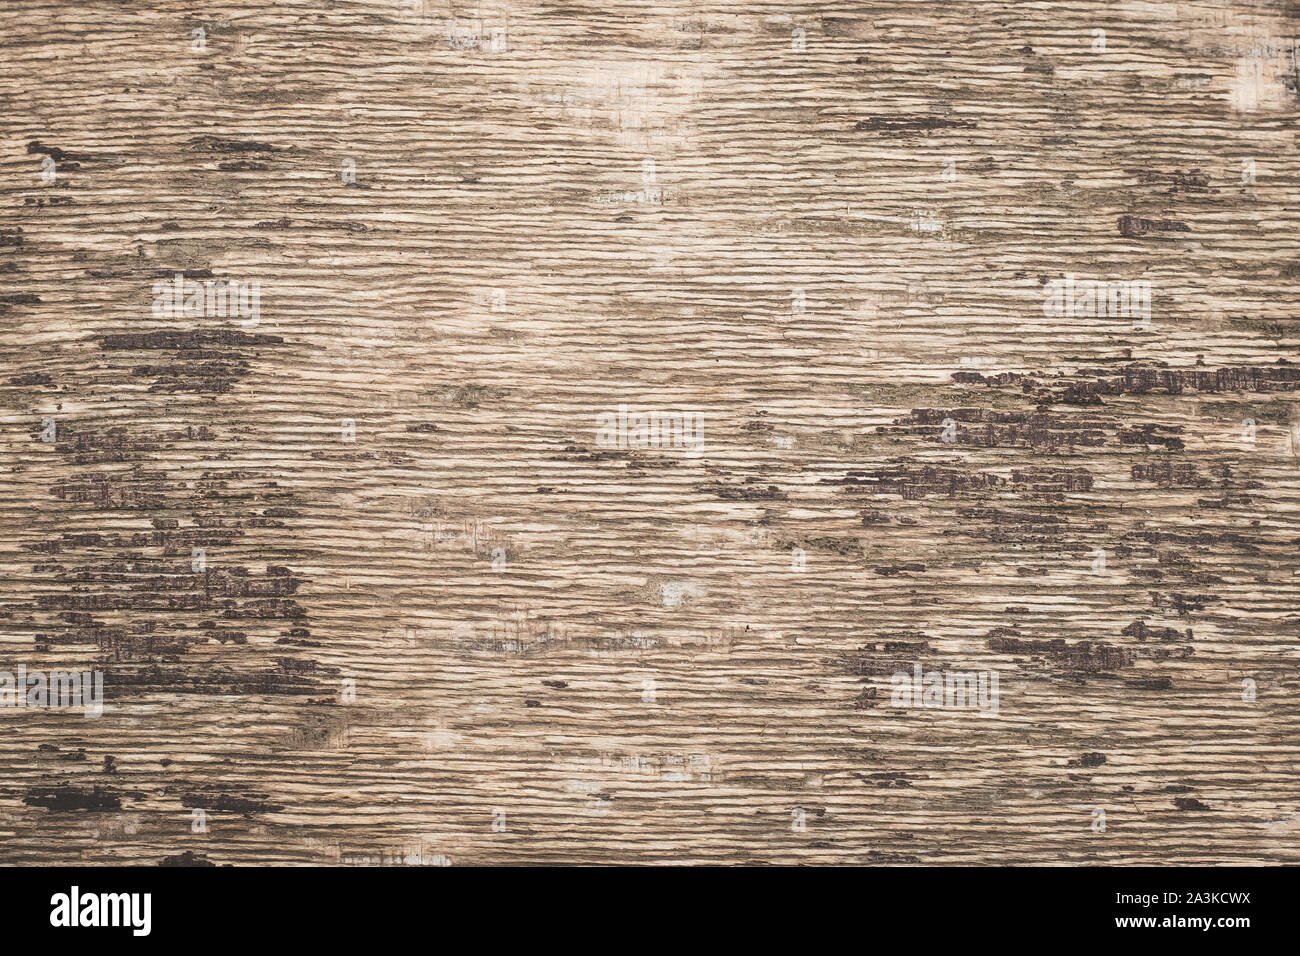 Sperrholz Hintergrund. Altes Papier Textur, Kulisse. Retro Stil Oberfläche, Holz- schmutzige zerkratzt Wand. Vintage rustikal Muster der Hellbraun. Stockfoto